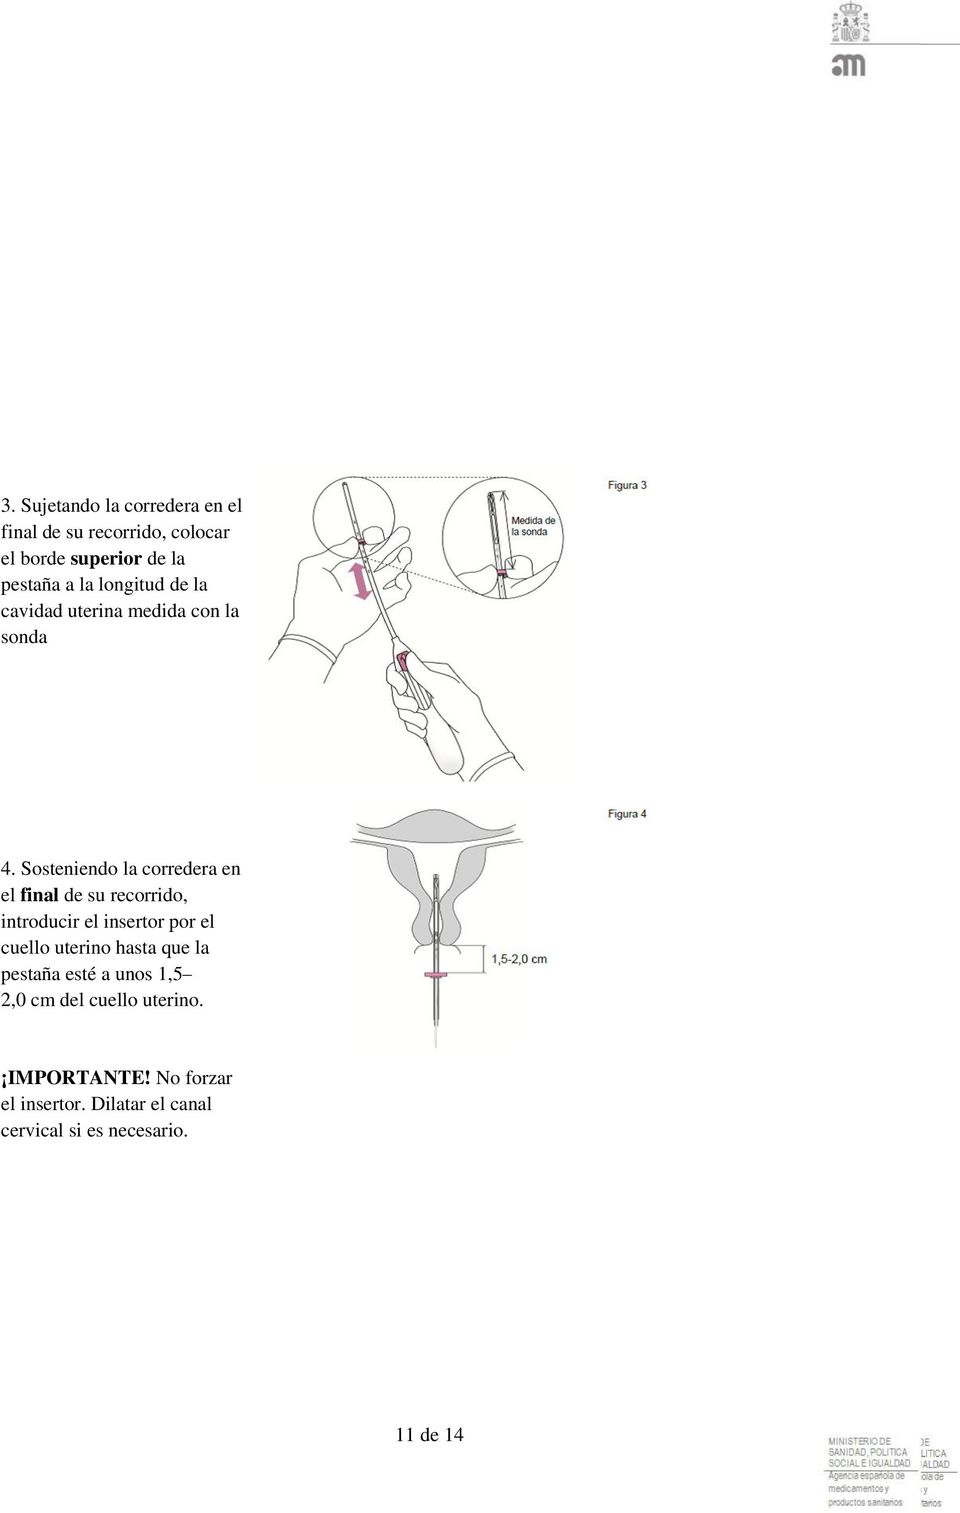 Sosteniendo la corredera en el final de su recorrido, introducir el insertor por el cuello uterino